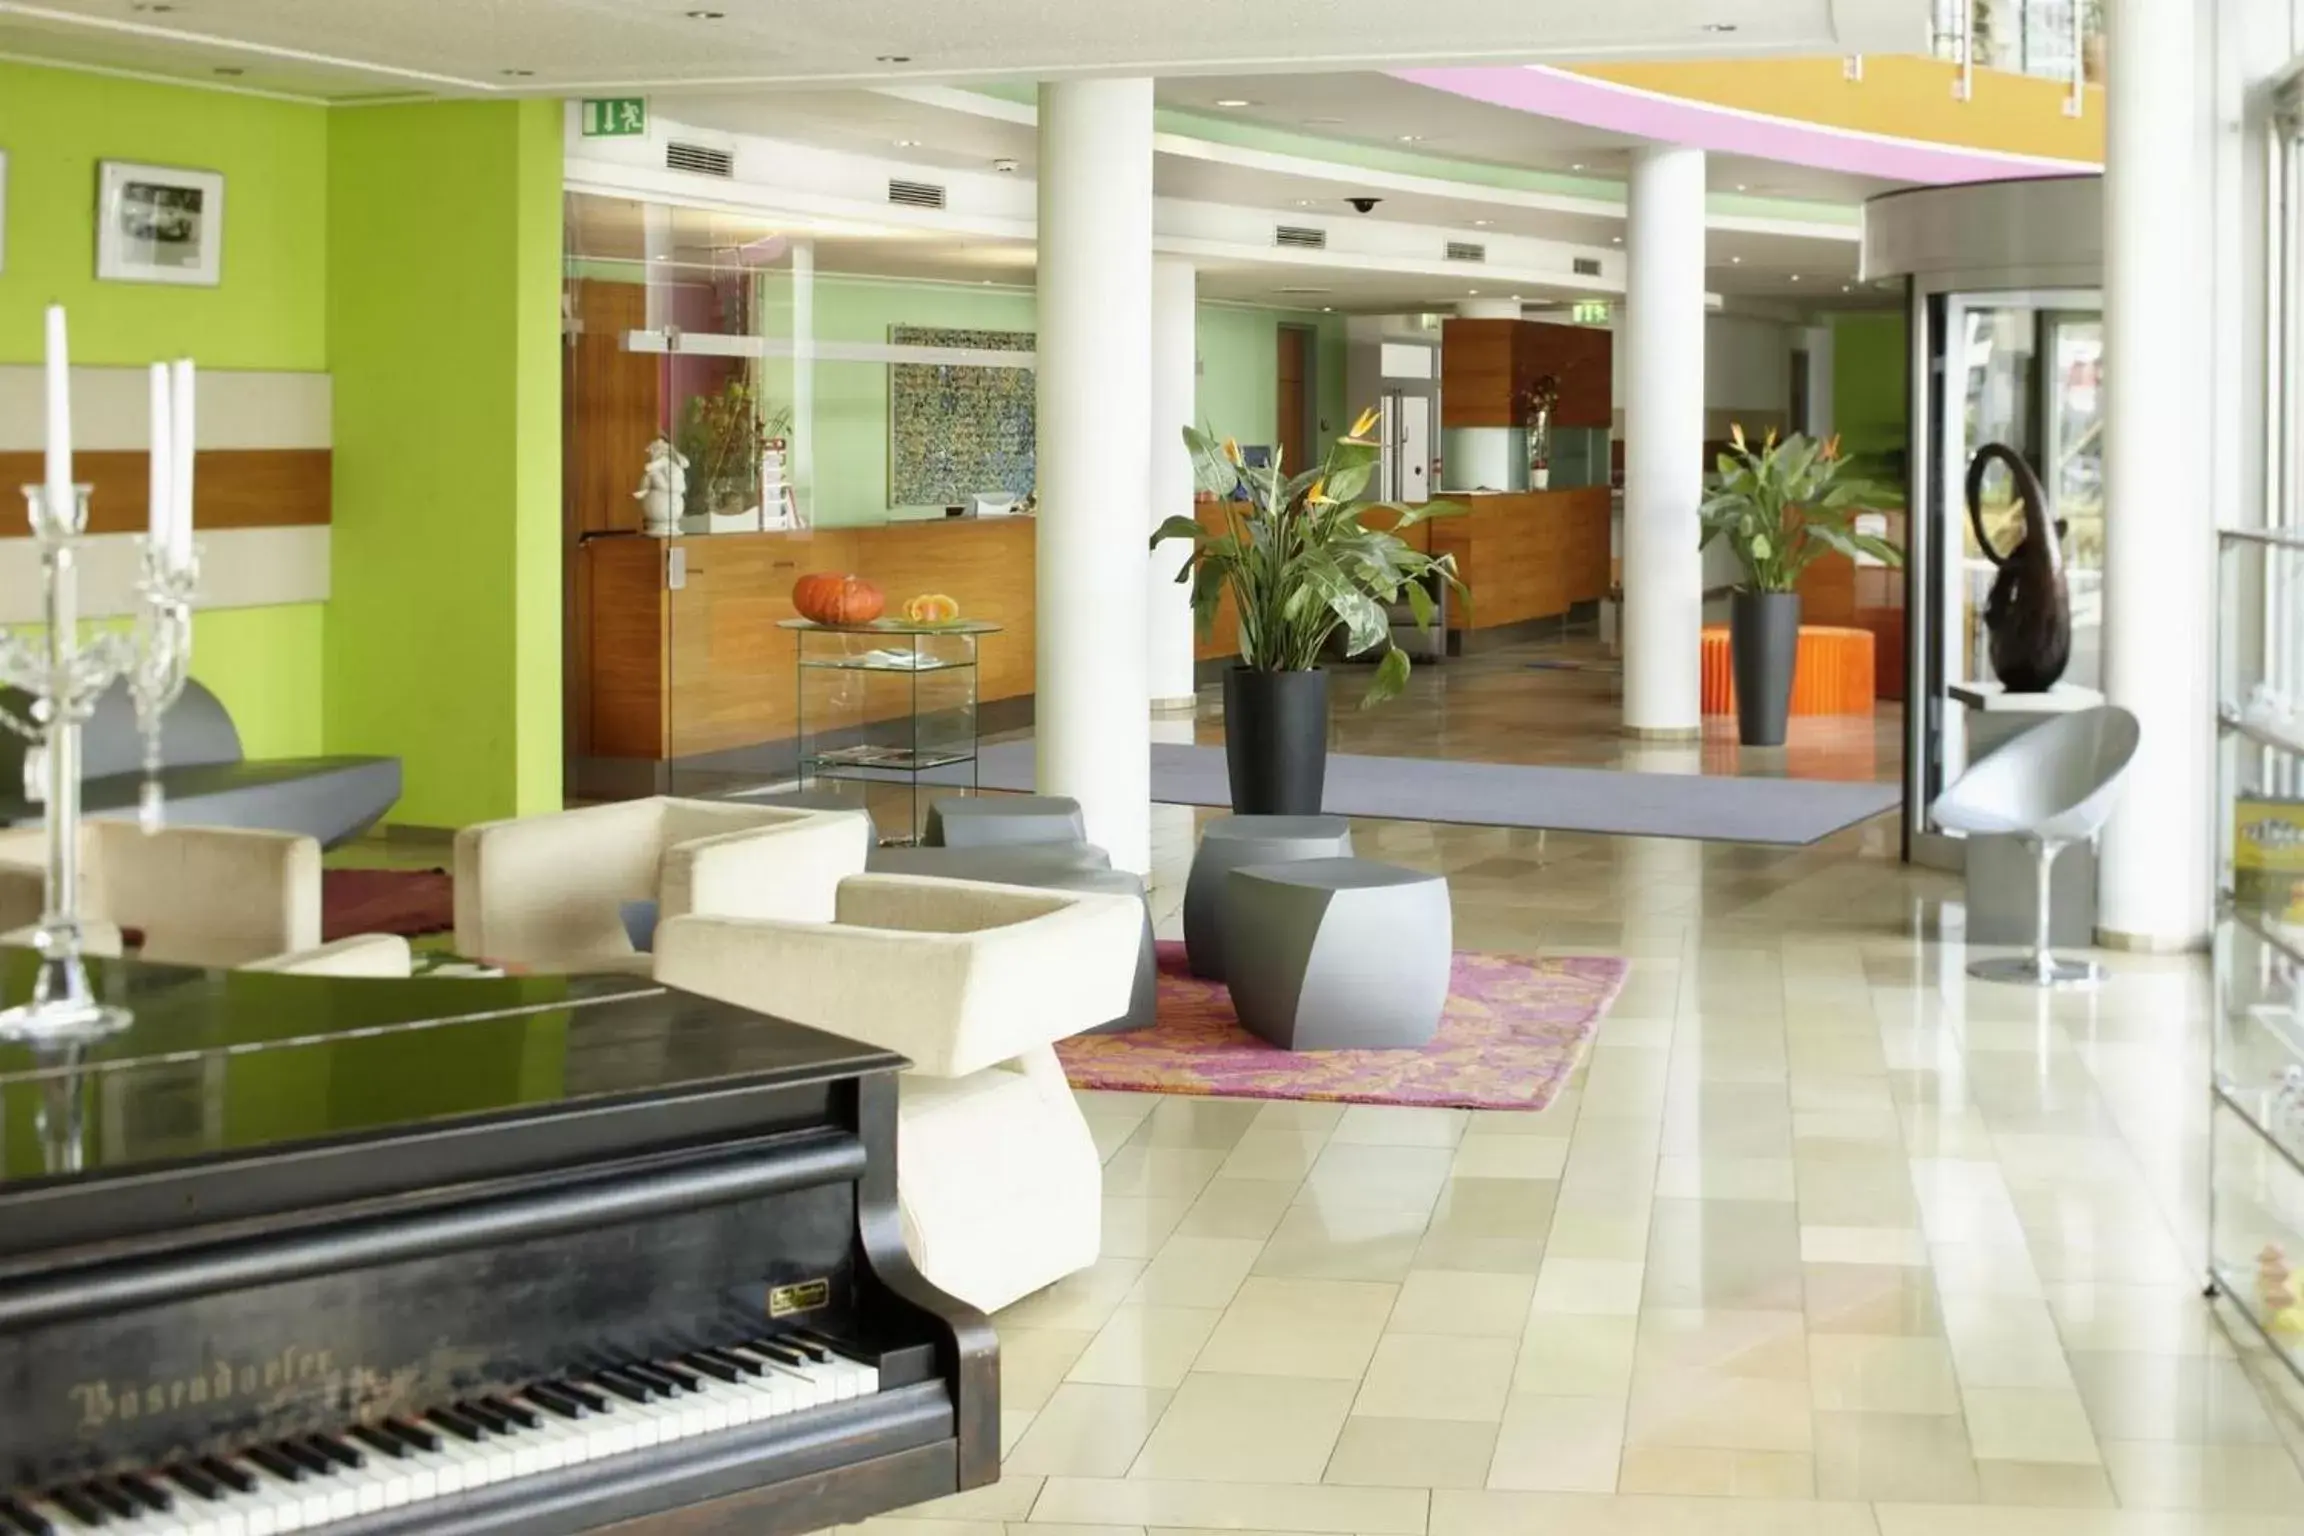 Lobby or reception, Lobby/Reception in Amadeo Hotel Schaffenrath